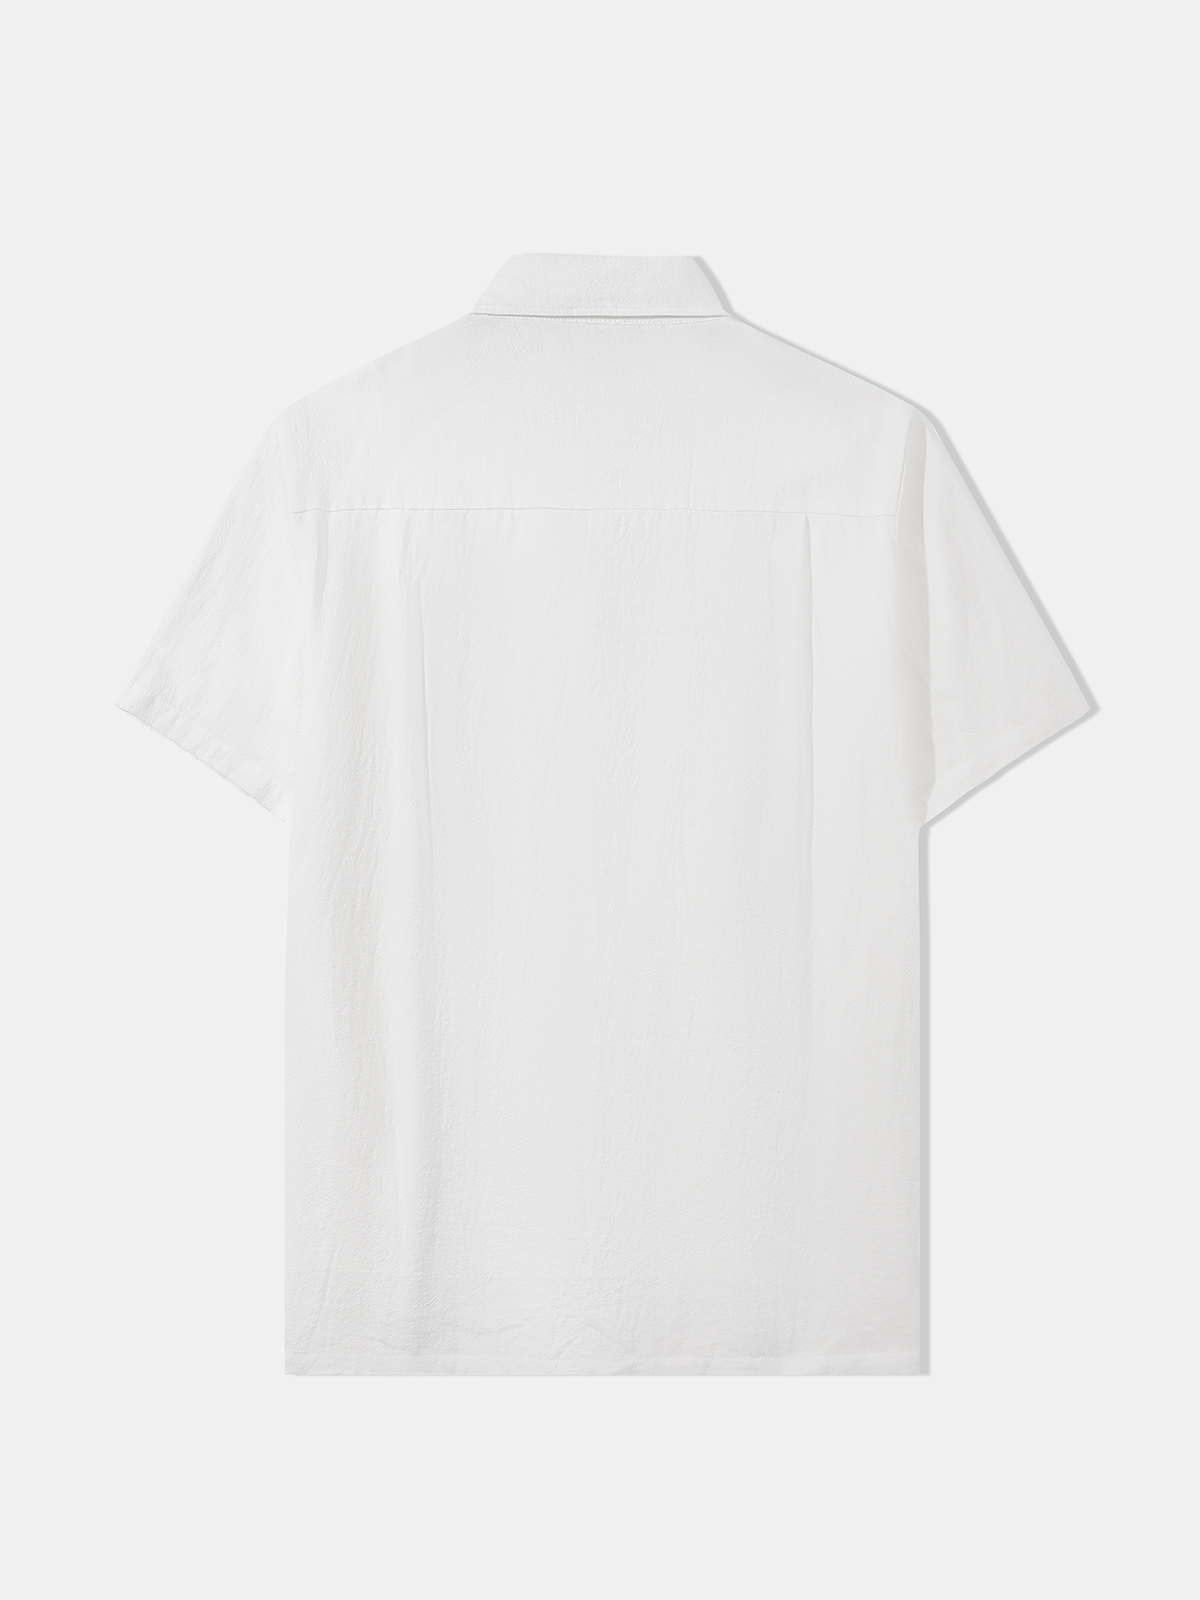 Hardaddy® Cotton Color-block Guayabera Shirt